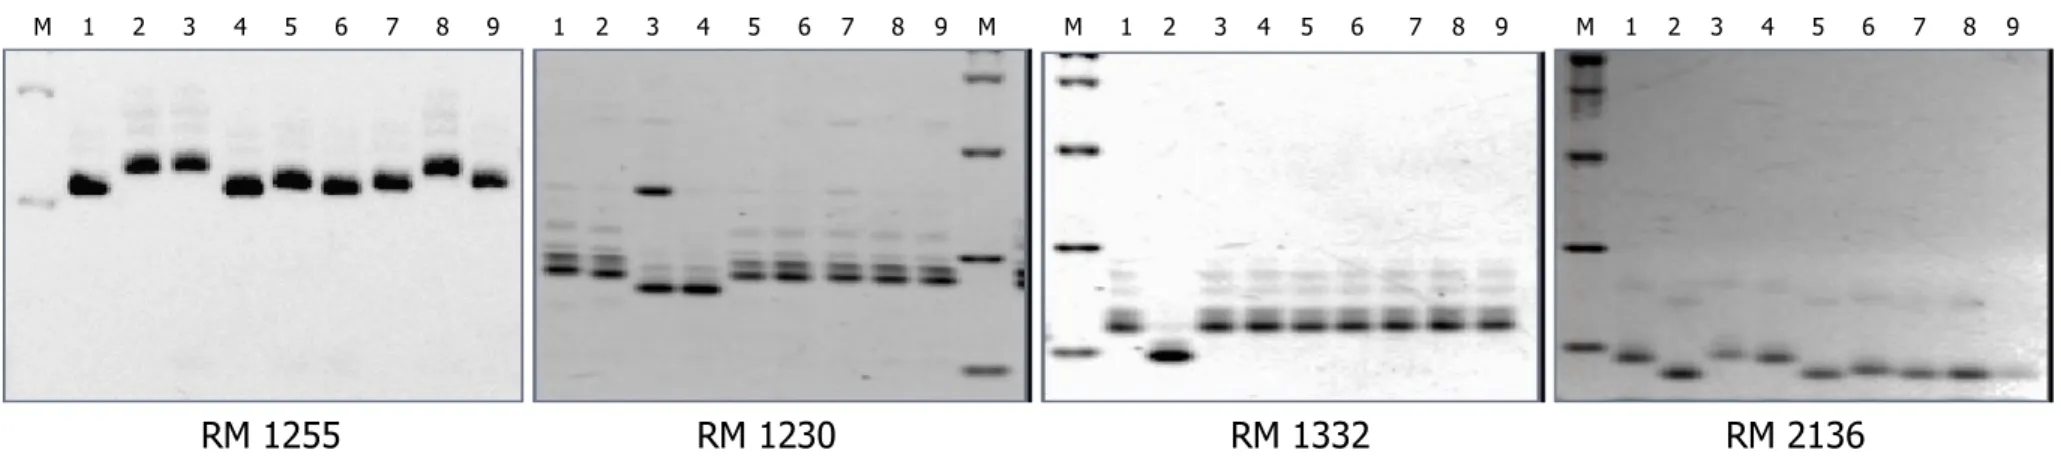 Gambar III.2.d2.   Polimorfisme calon-calon tetua persilangan padi menggunakan marka mikrosatelit  (SSR) RM 1255, RM 1230,  RM 1332, dan RM 2136